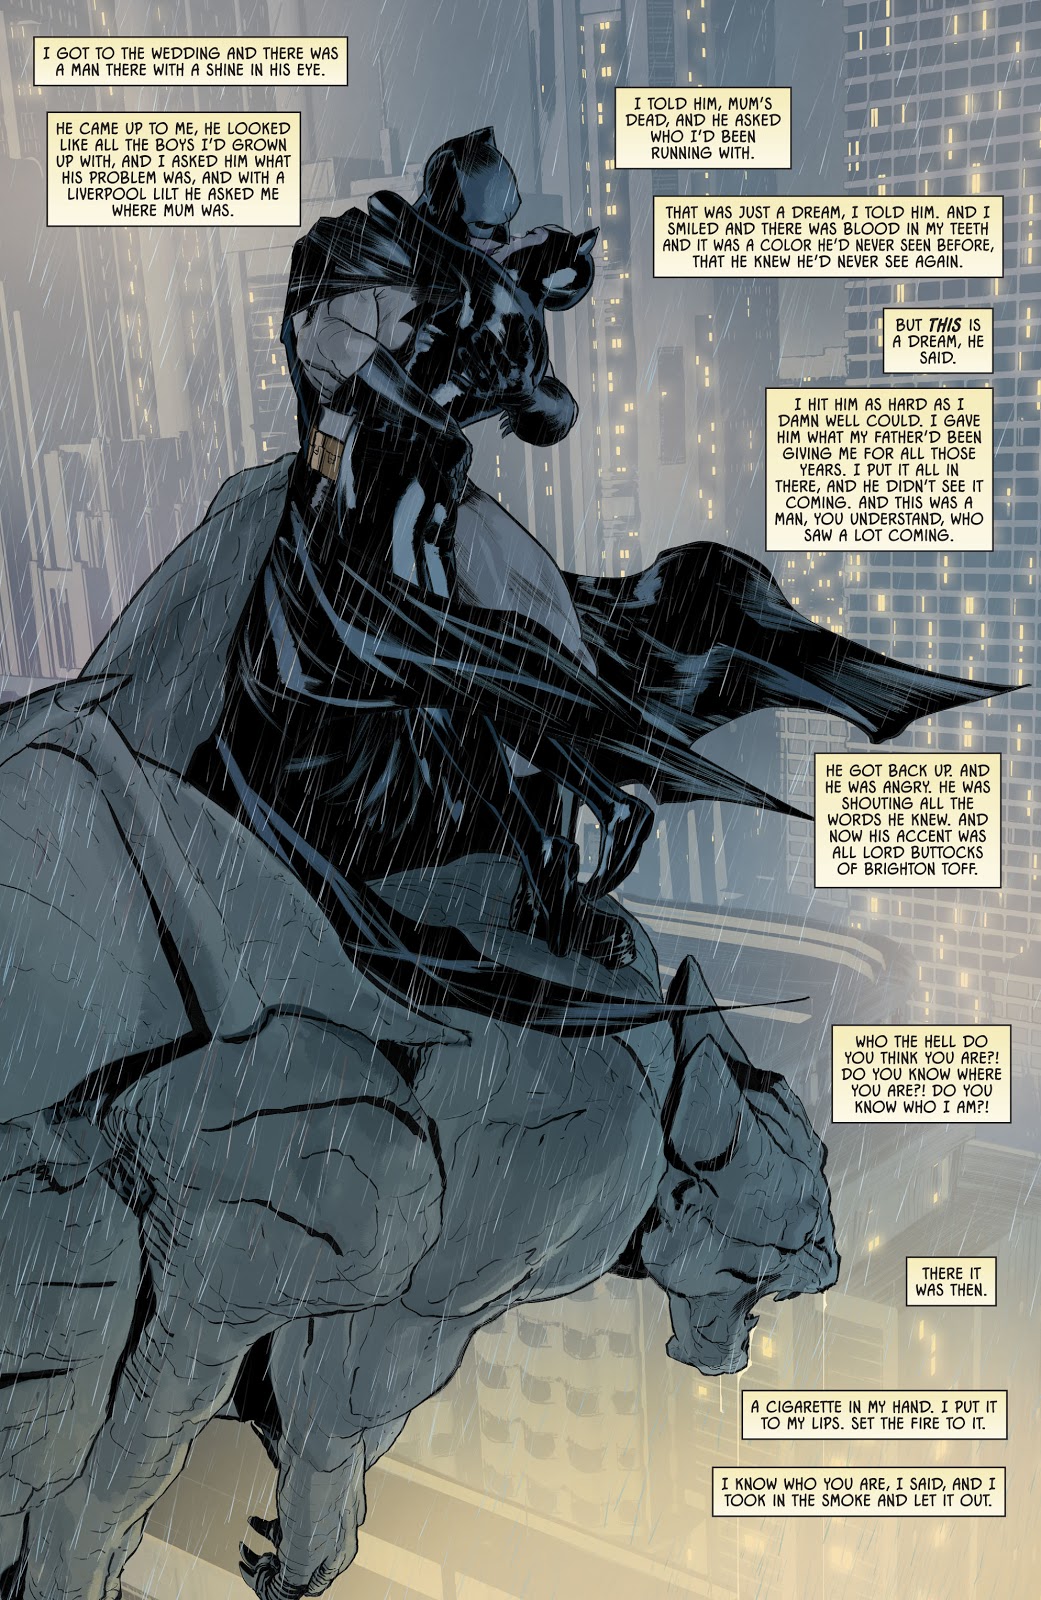 Batman And Catwoman (Batman Vol. 3 #63)